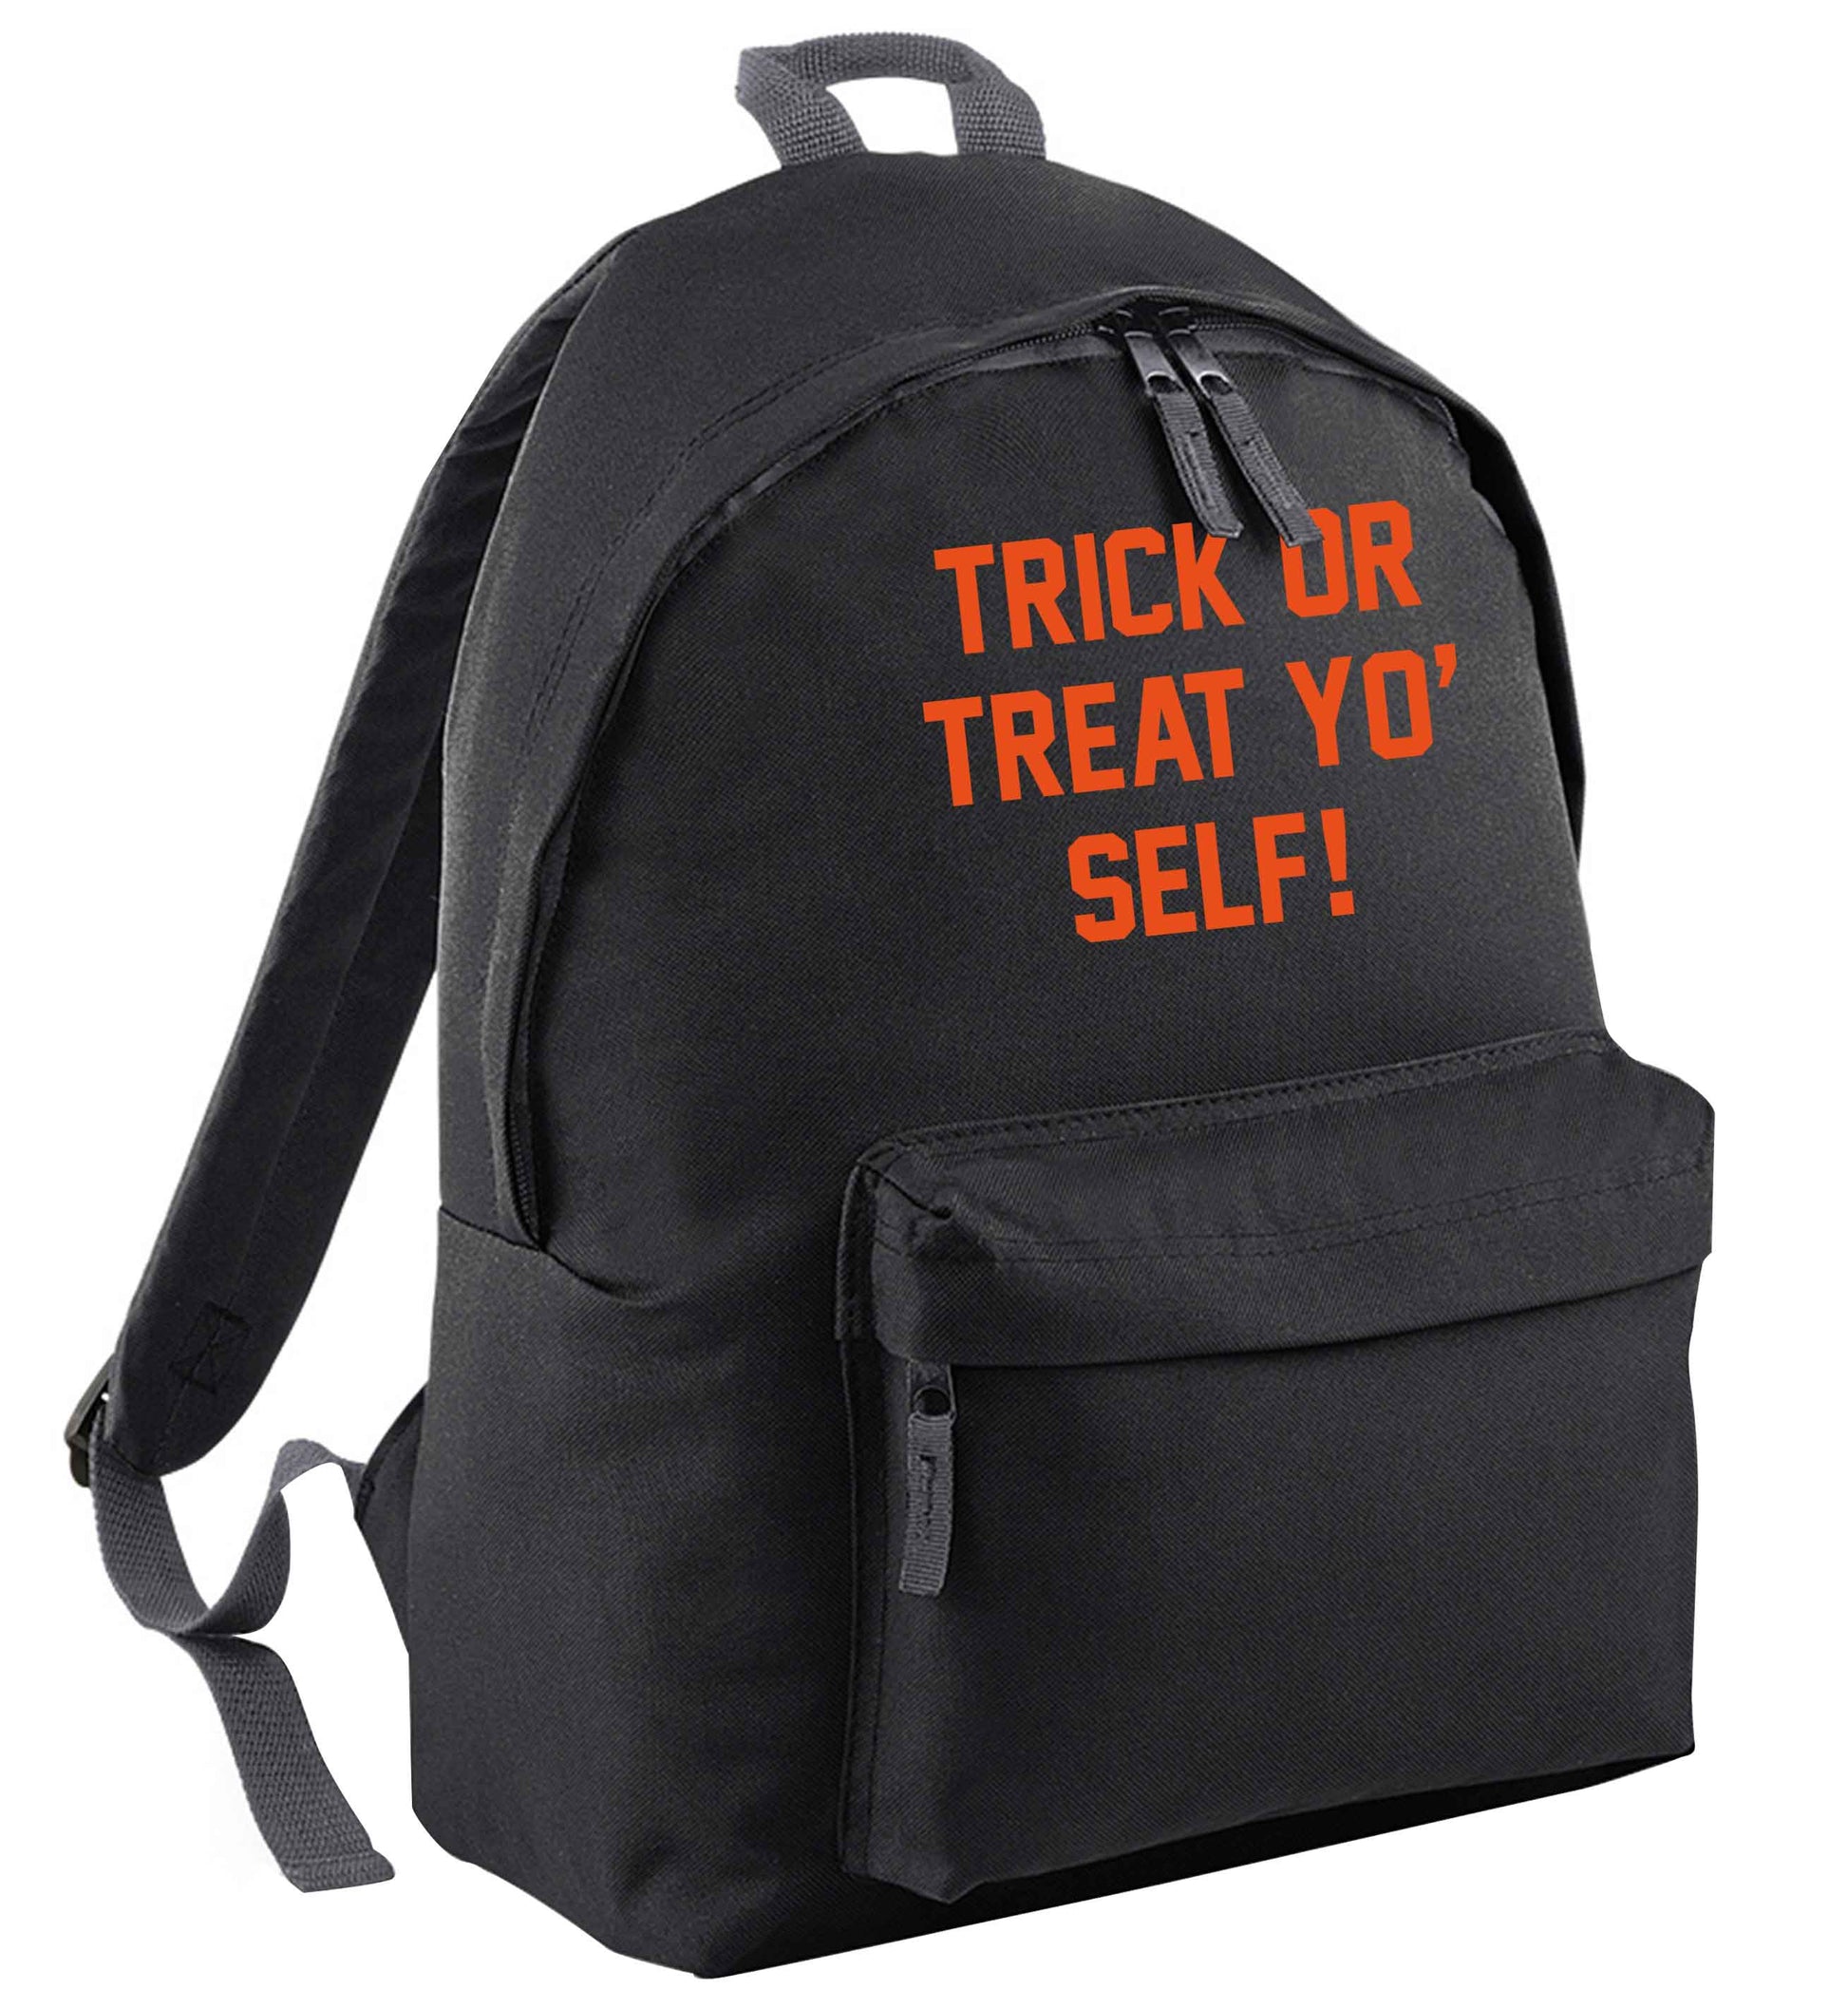 Trick or Treat Yo' Self black adults backpack